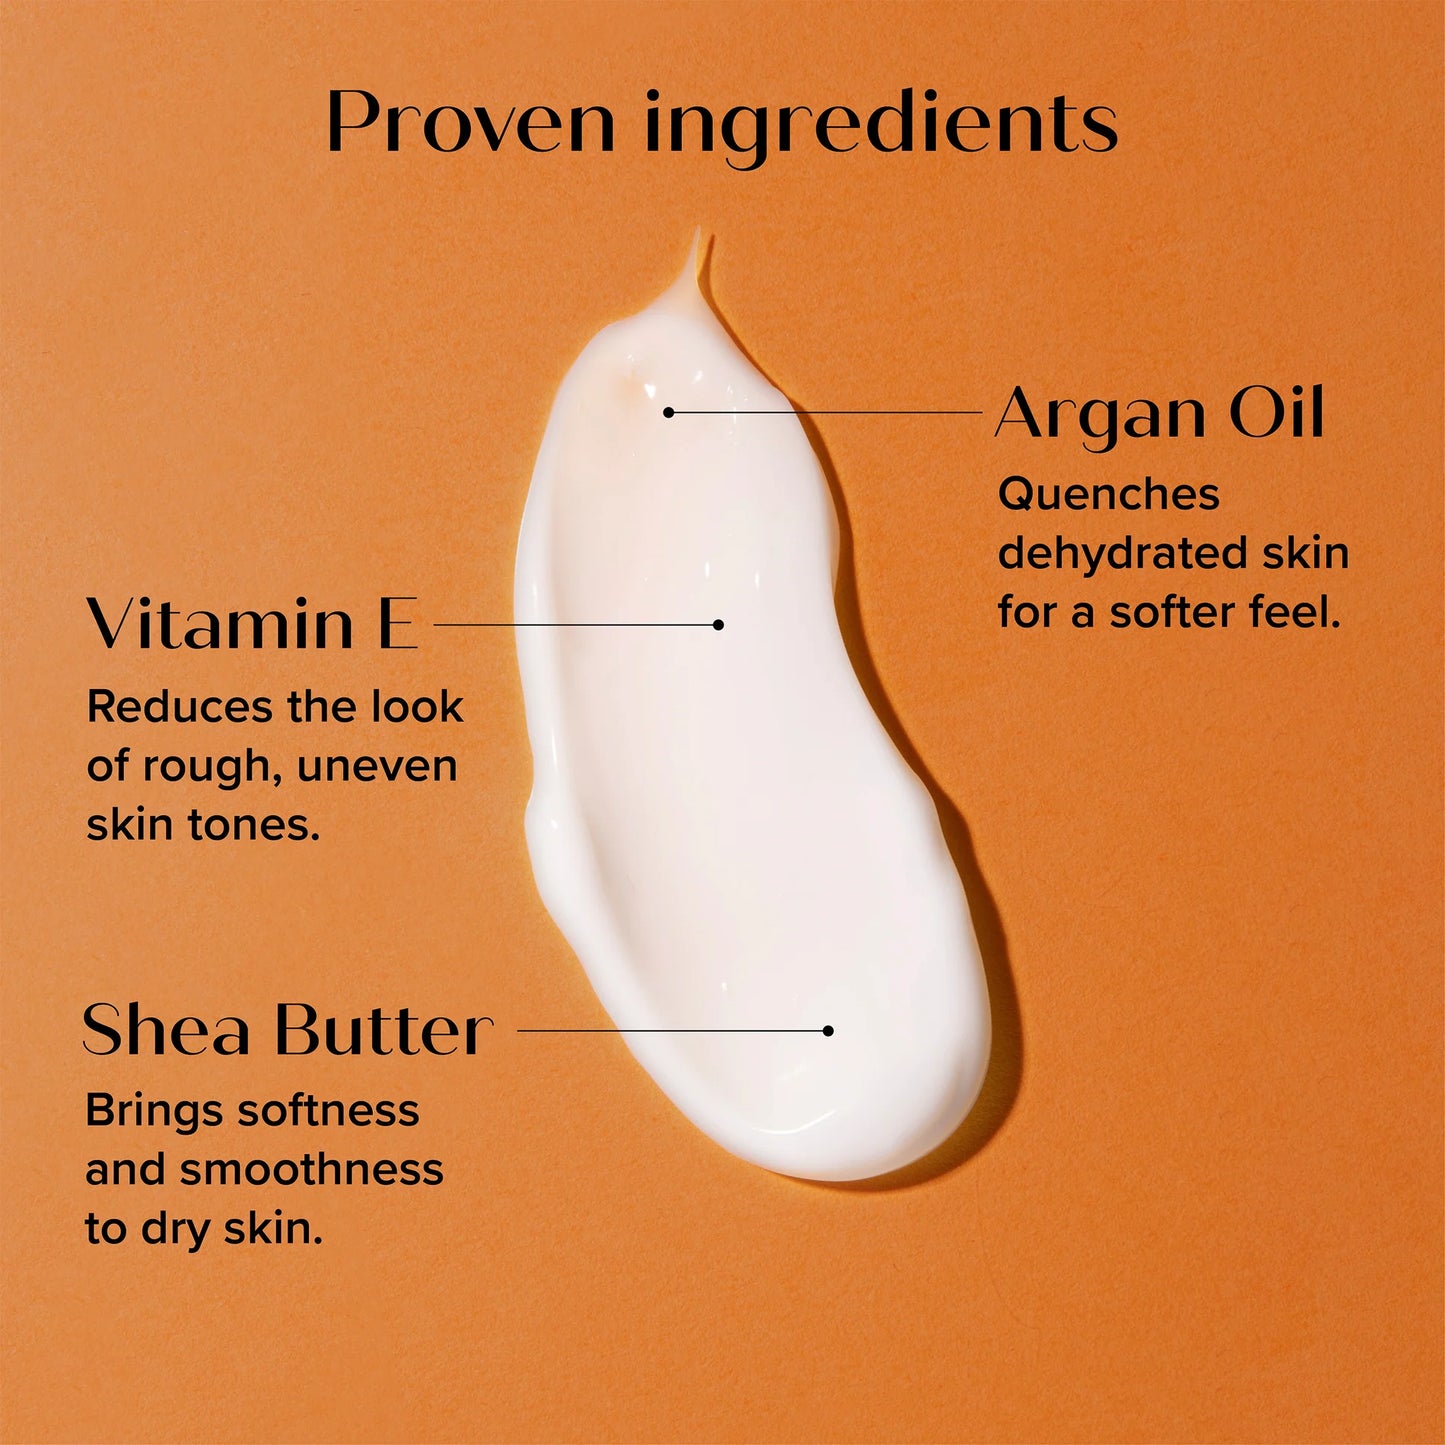 Argan Oil + Vitamin E Dryness Relief Body Treatment Cream